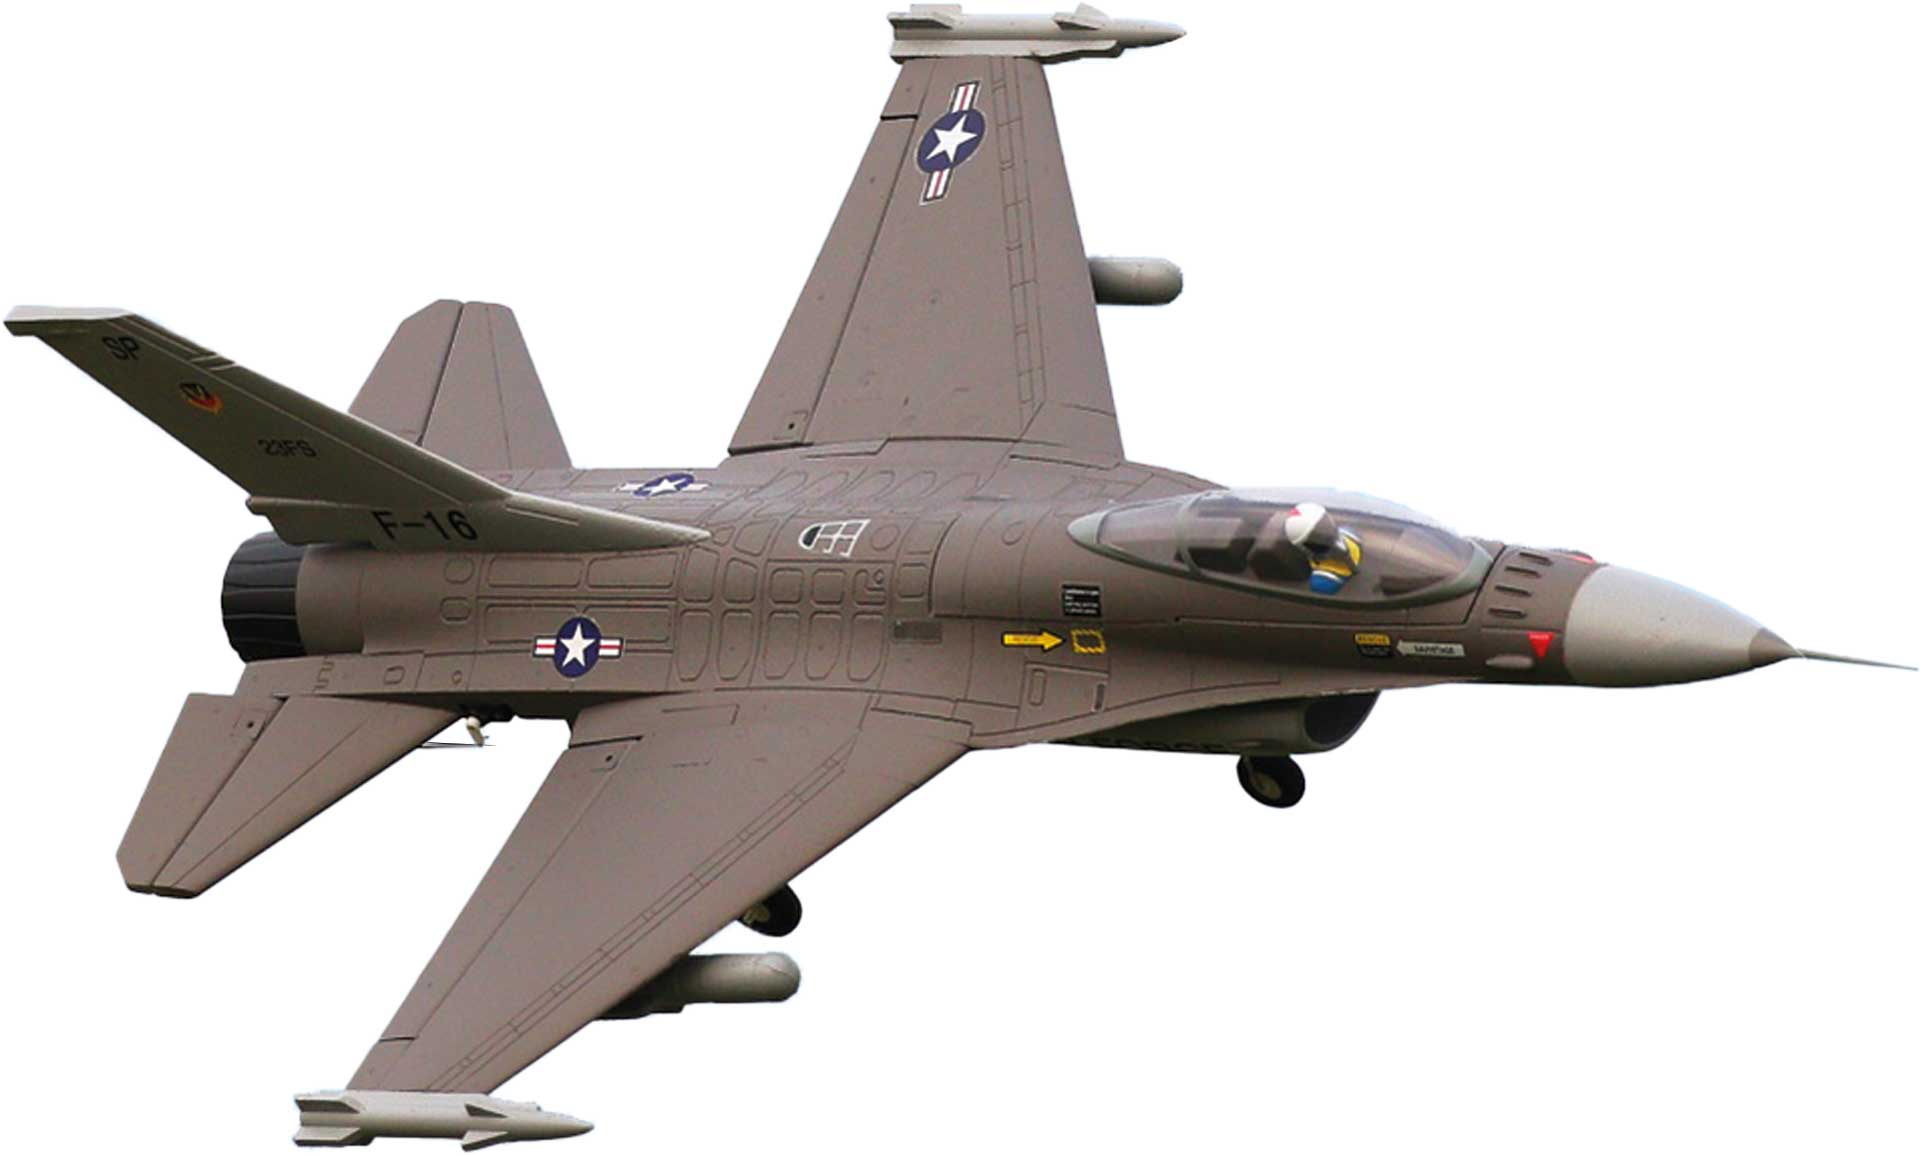 FMS F-16 V2 Jet EDF 64 PNP - 73 cm